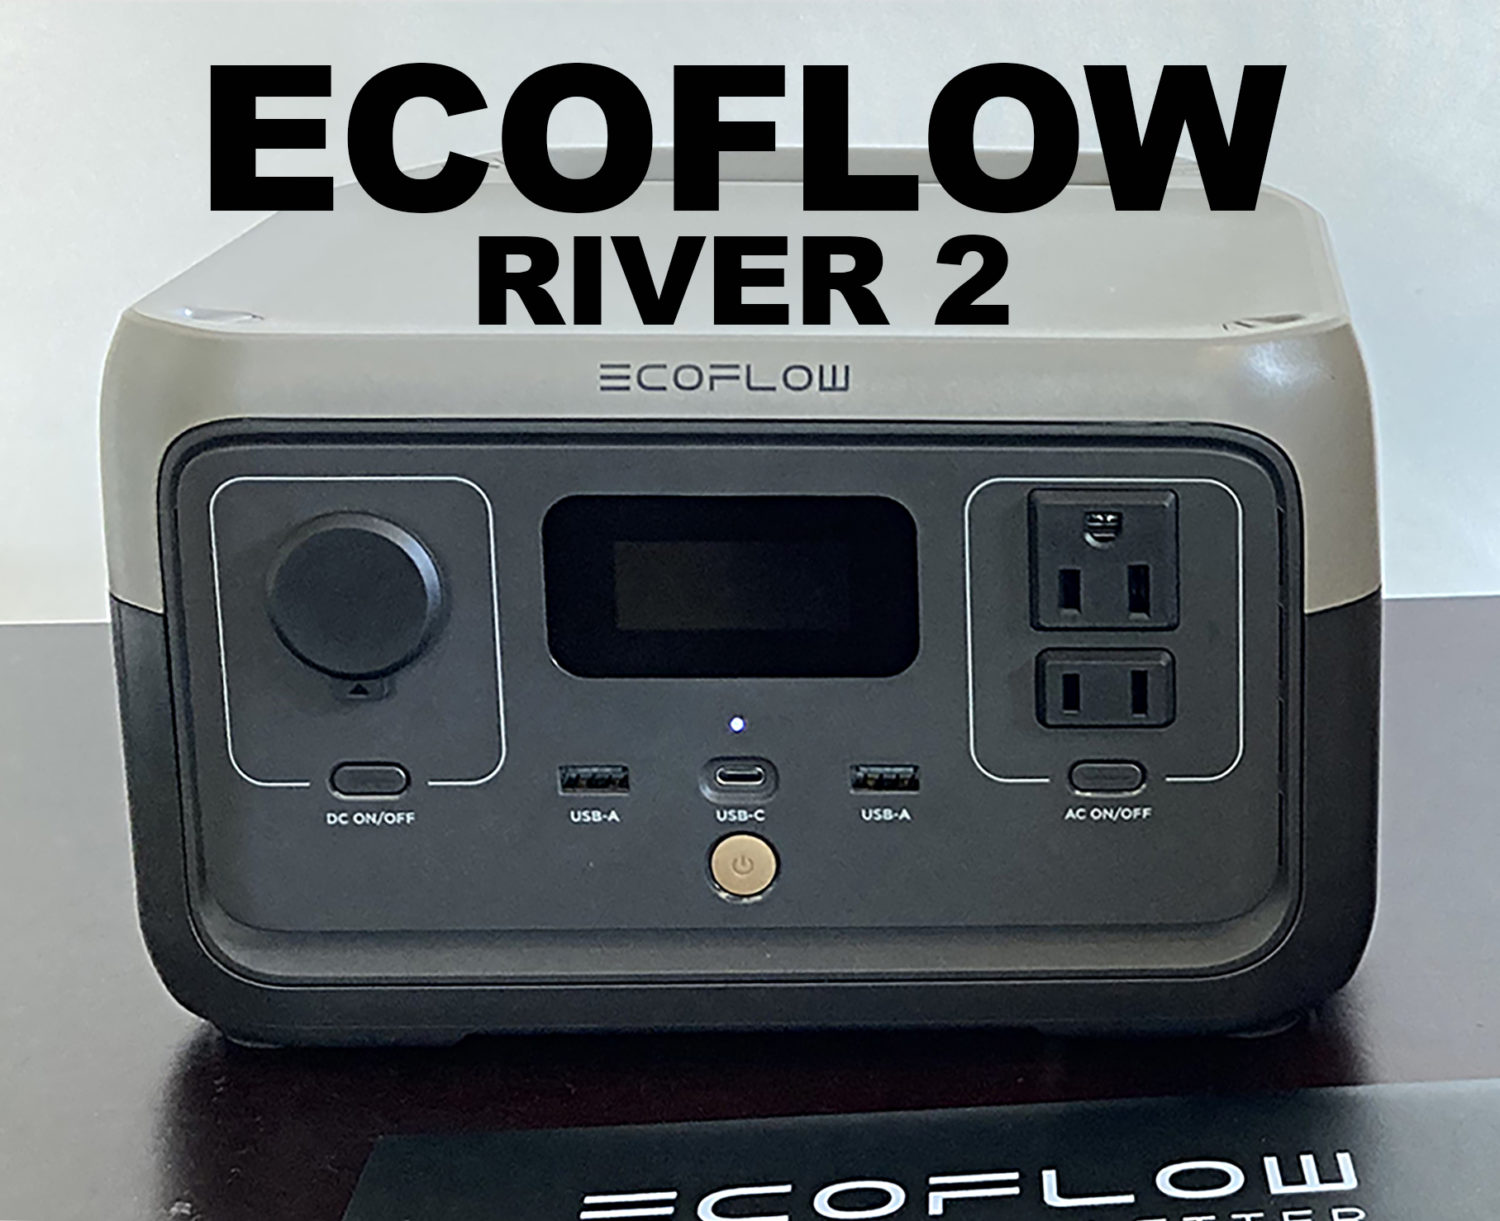 【新品未使用】EcoFlow RIVERシリーズ専用バッグ ポータブル電源用収納